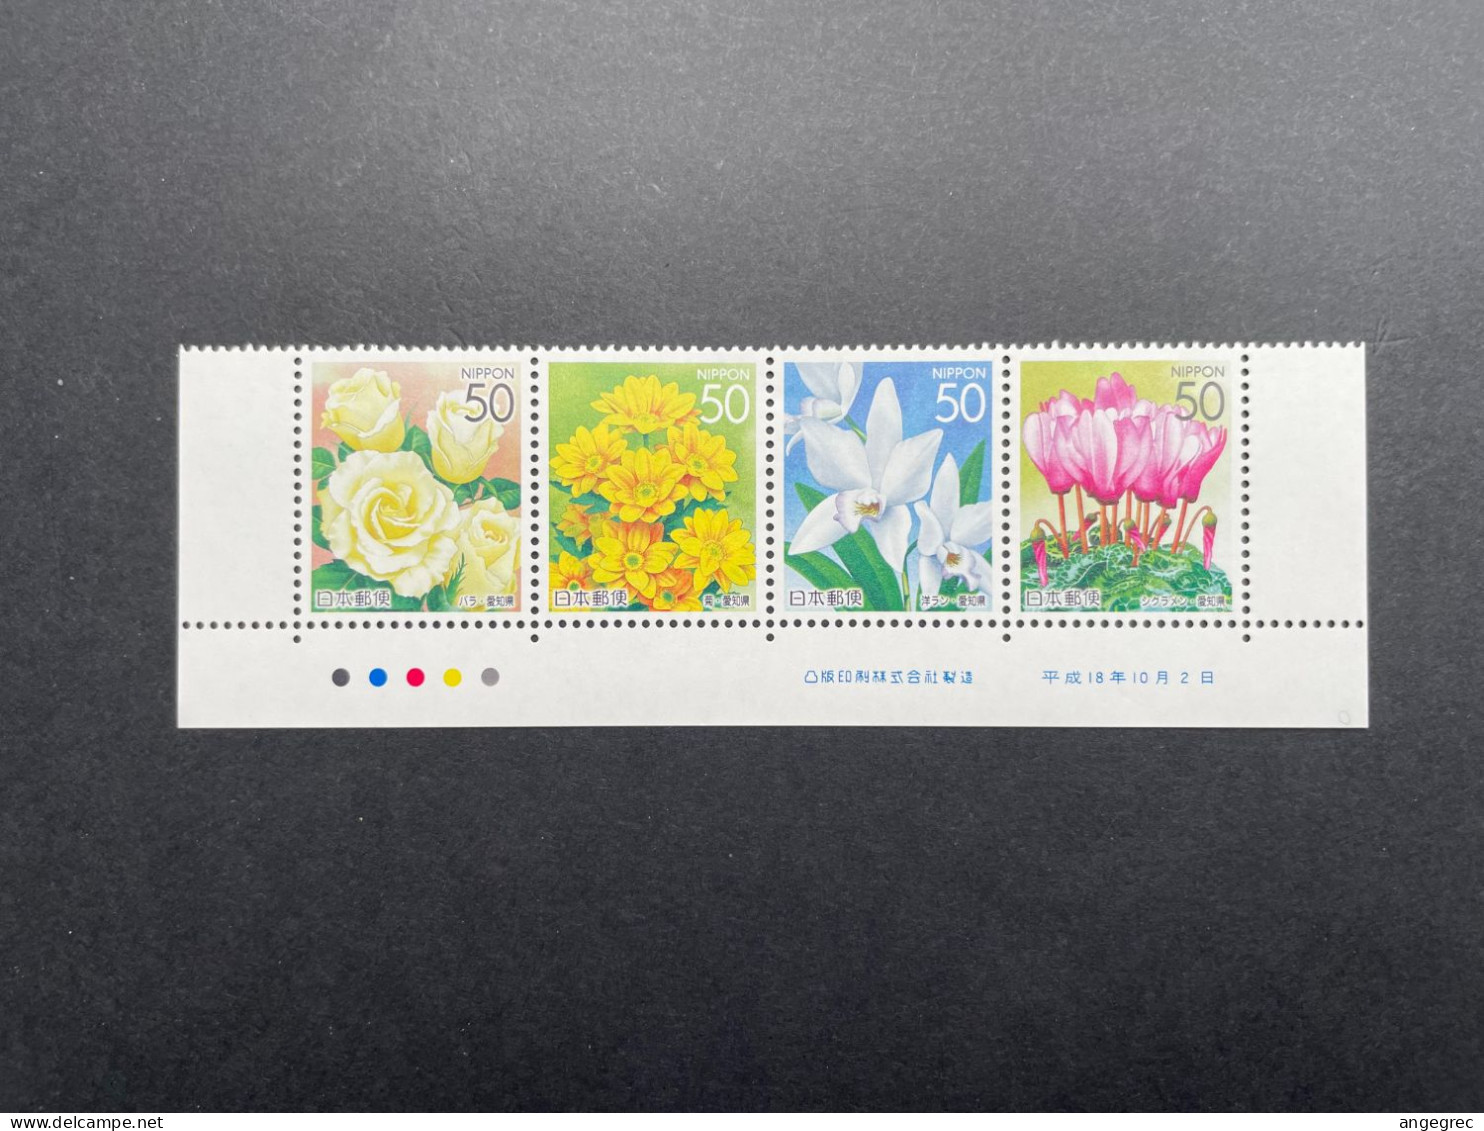 Timbre Japon 2005 Bande De Timbre/stamp Strip Fleur Flower N°3925 à 3928 Neuf ** - Collezioni & Lotti